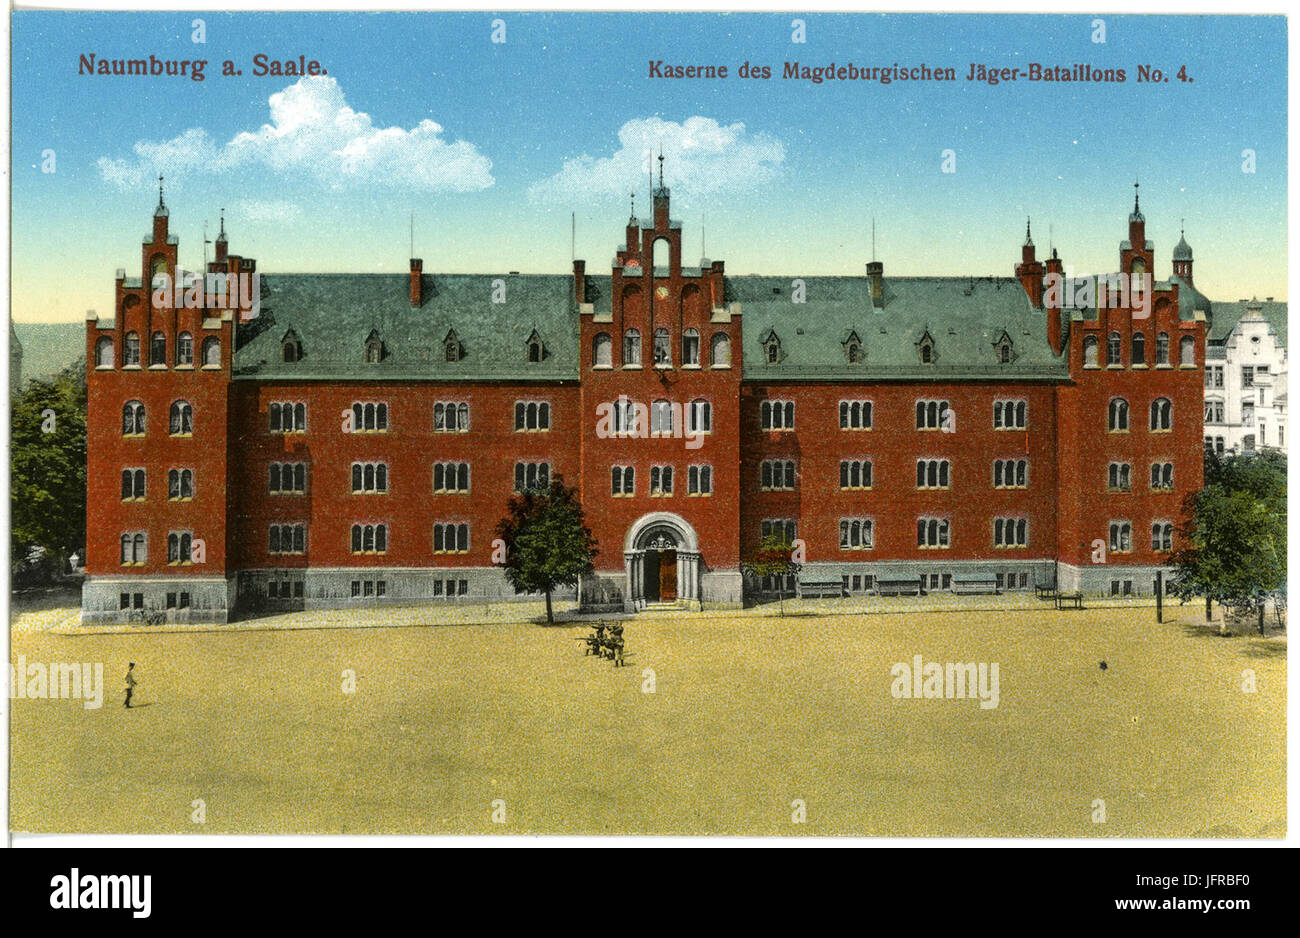 18647-Naumburg-1915-Kaserne des Magdeburger Jäger-Bataillon Nr. 4-Brück & Sohn Kunstverlag Stock Photo